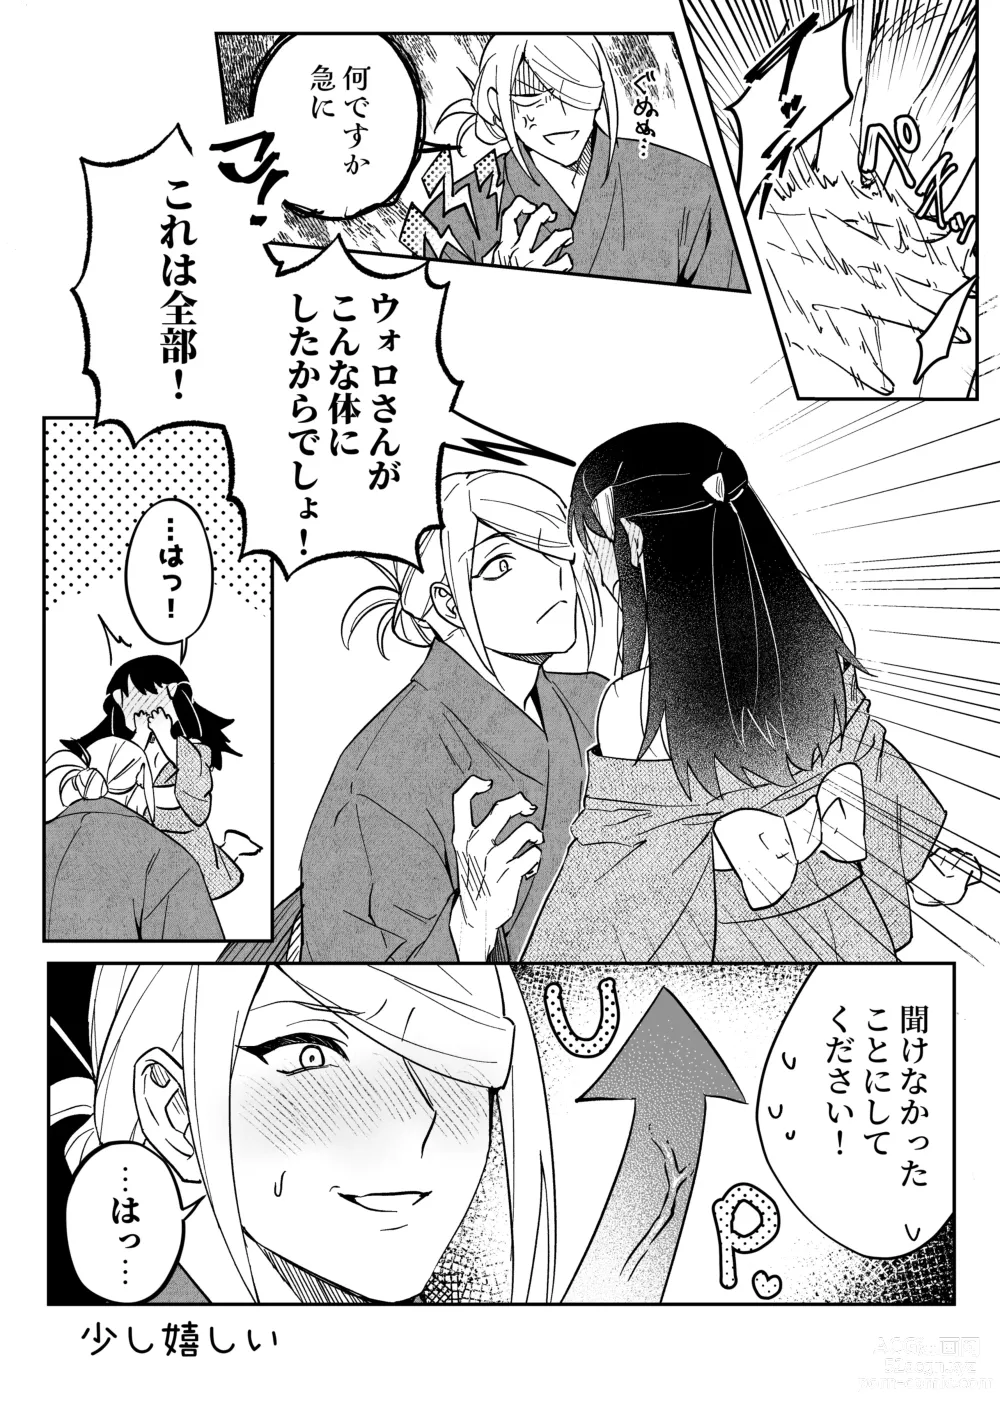 Page 7 of doujinshi Chikubi Karakau Volo Shou Manga